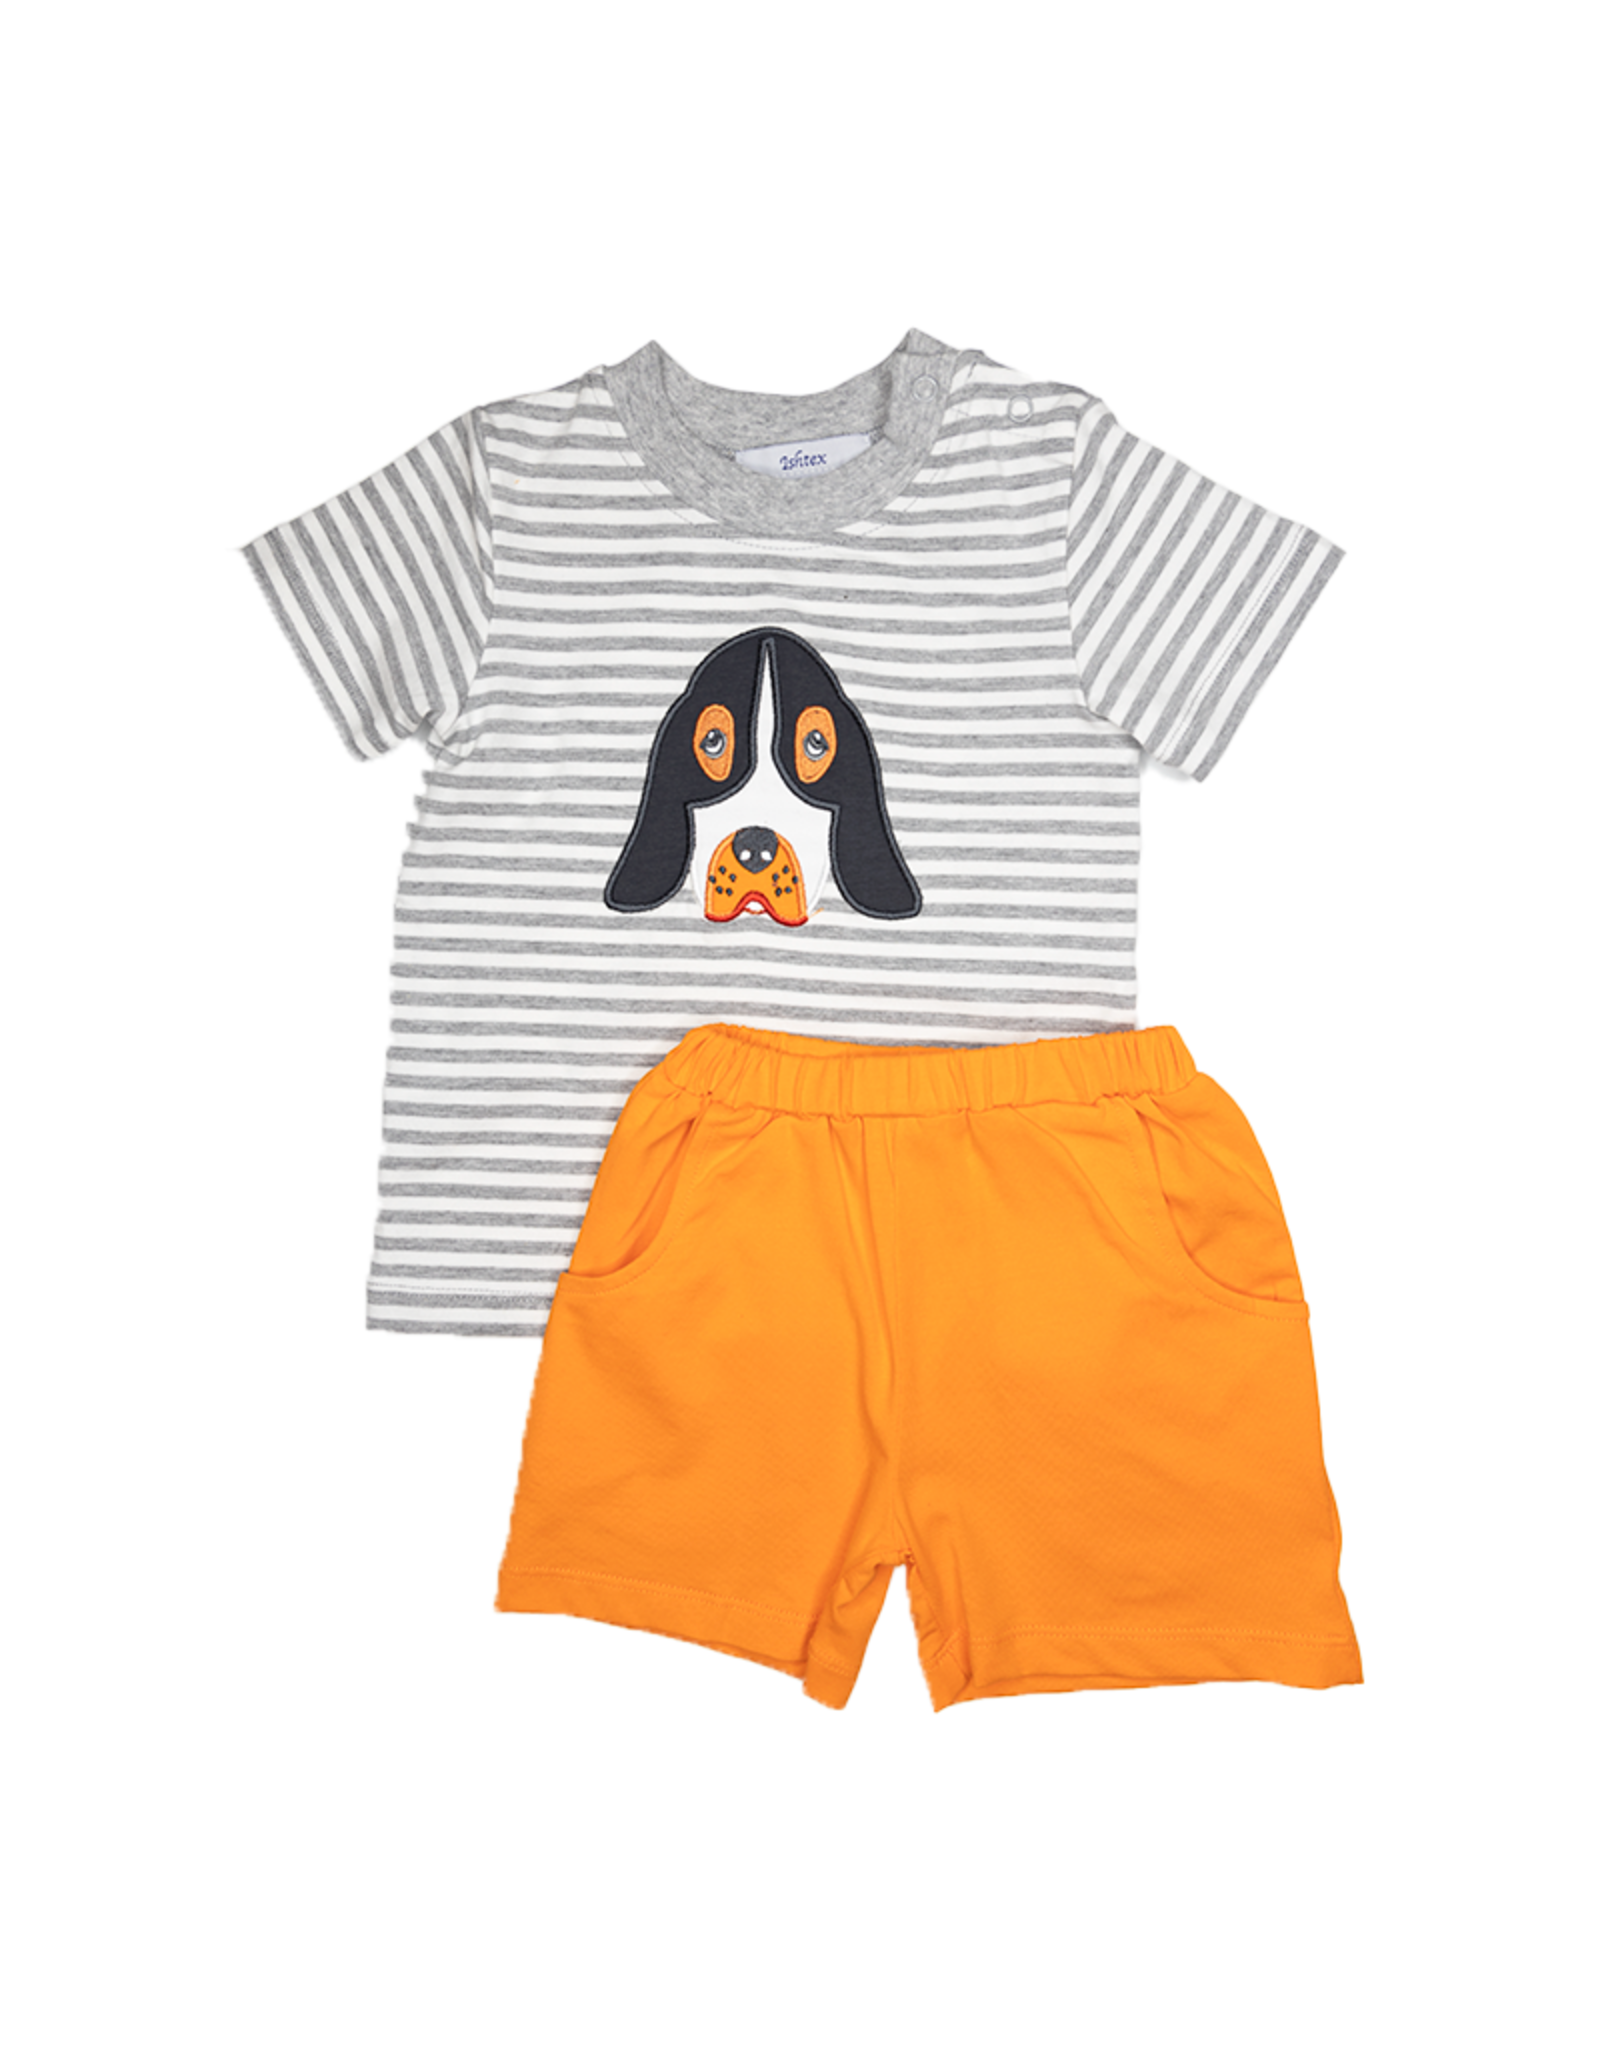 Ishtex 2F033 Grey/Orange Dog Short Set